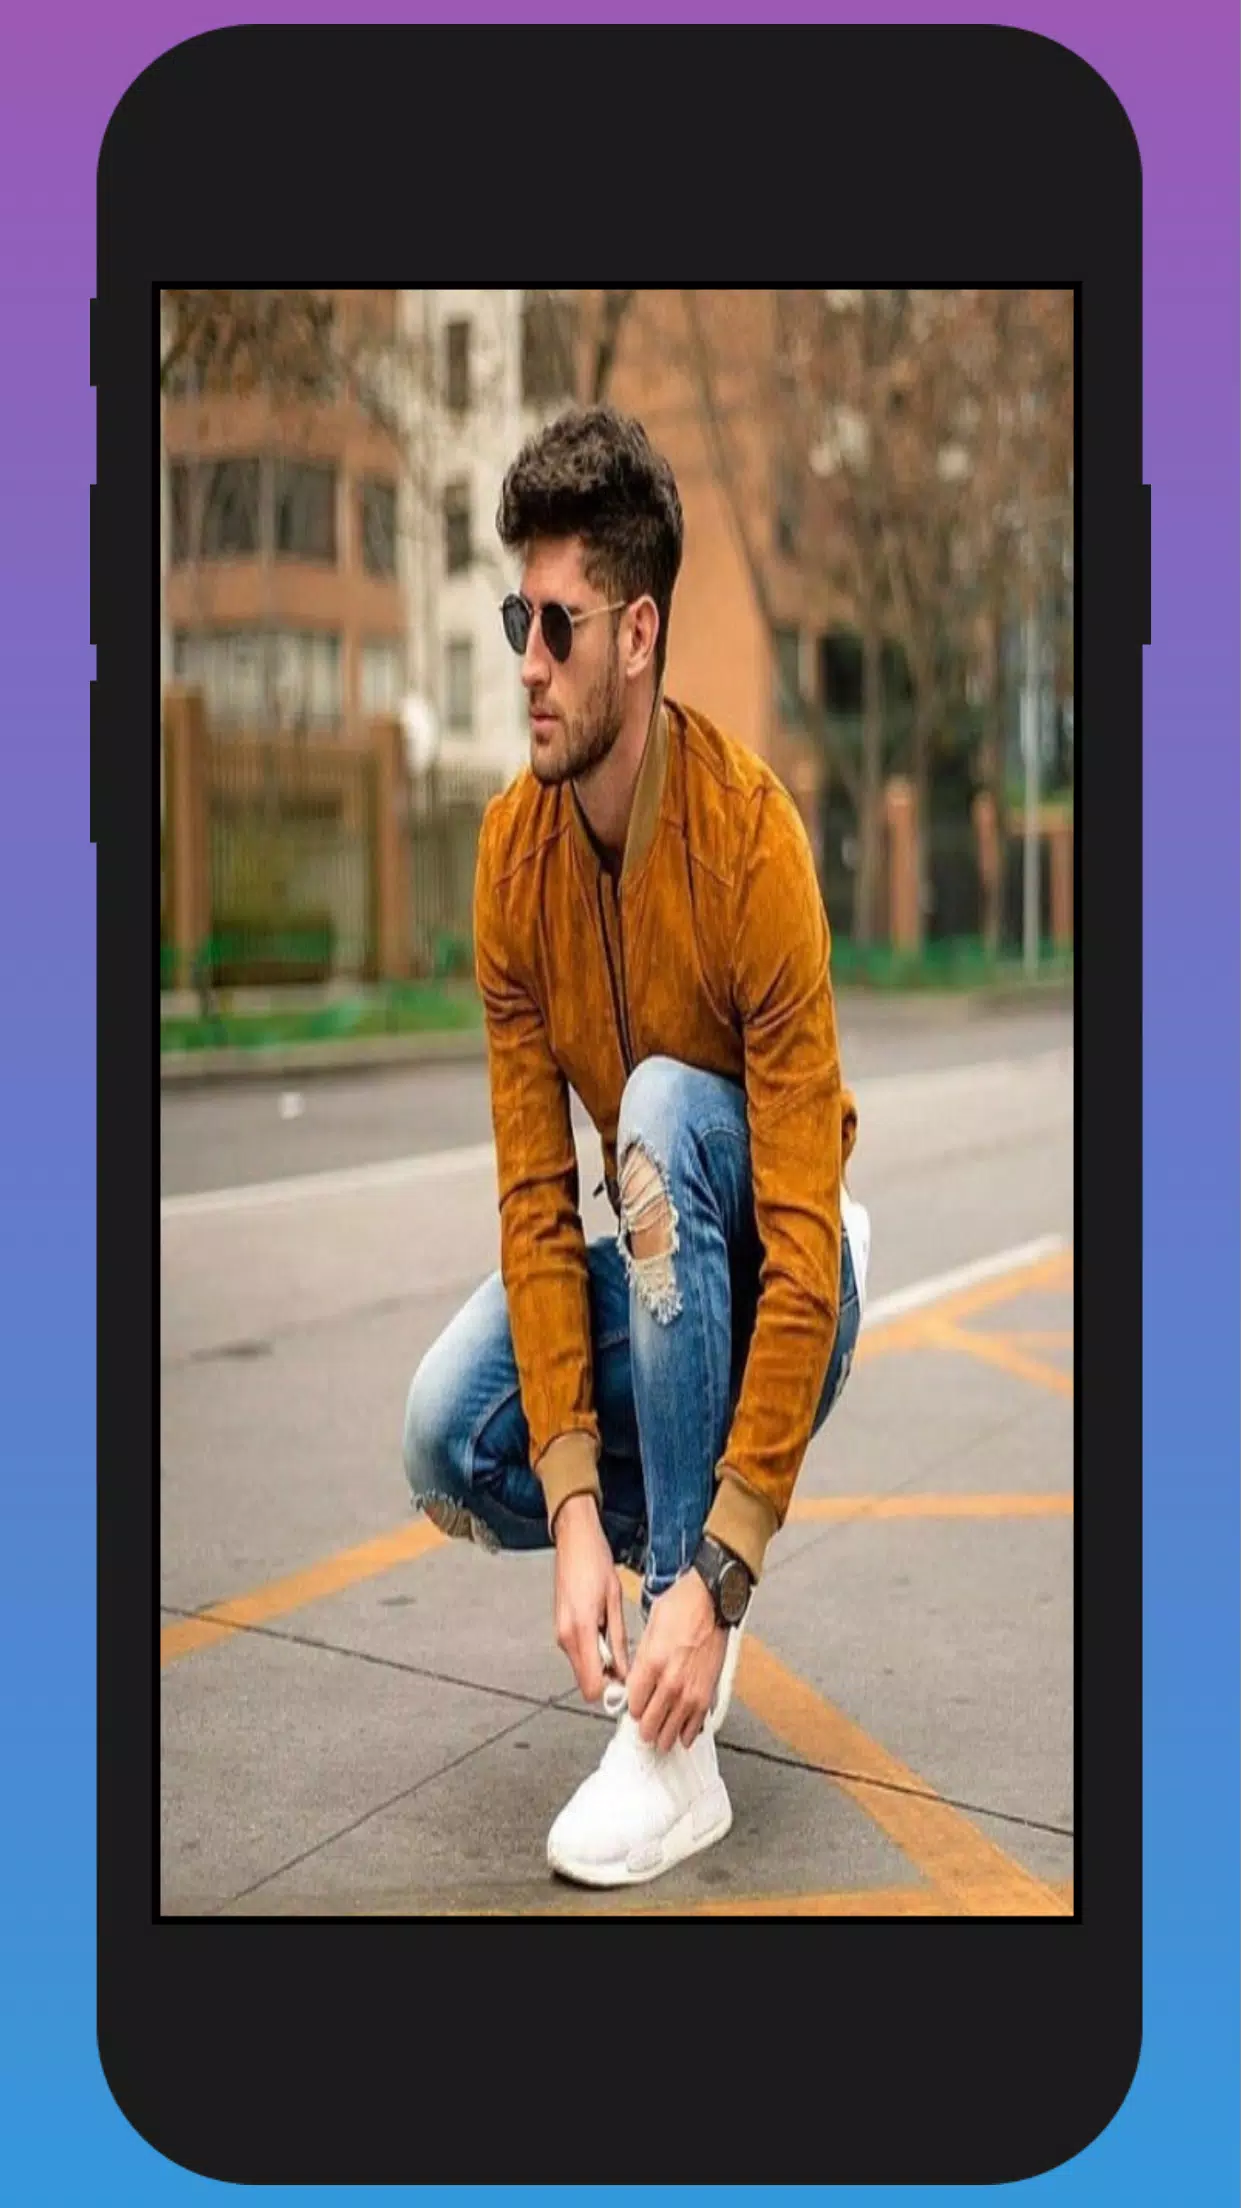 ملابس الرجال : أزياء رجال 2019 for Android - APK Download